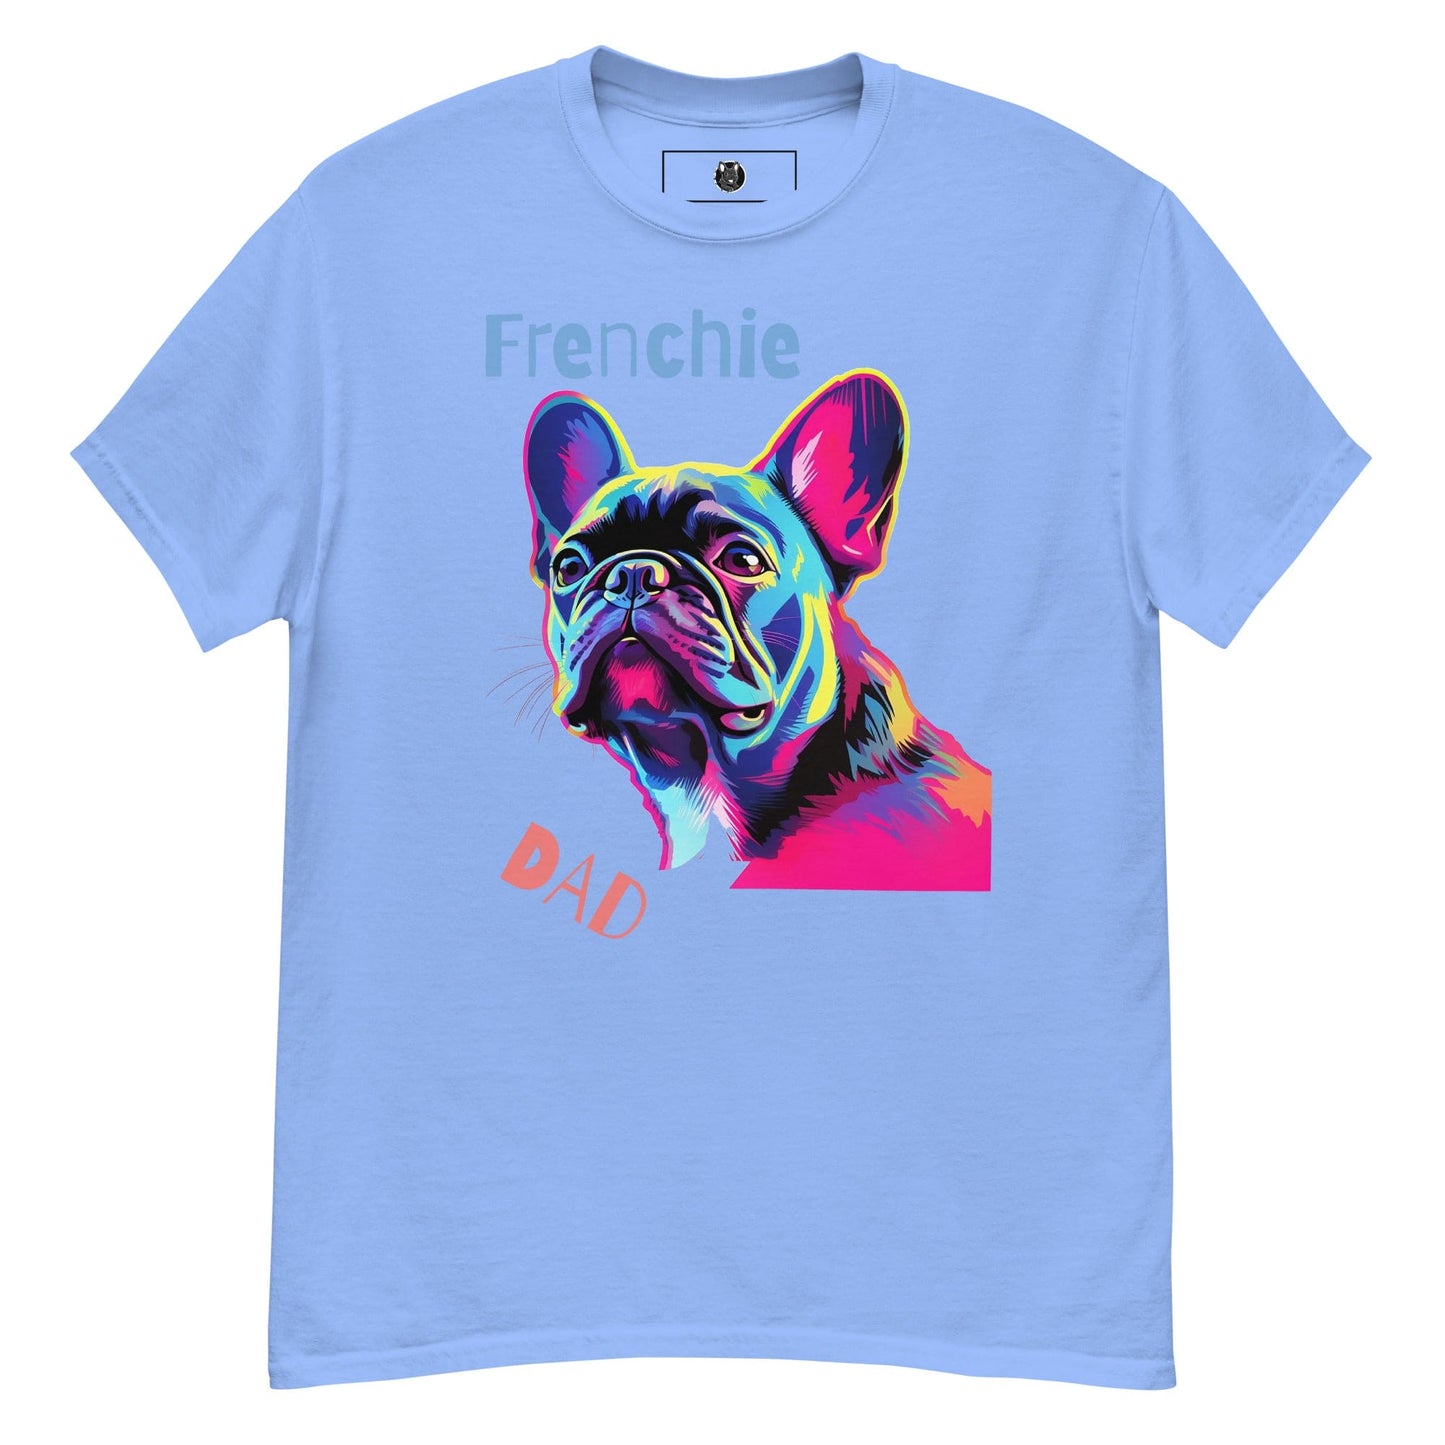 Frenchie Dad - Unisex T-shirt